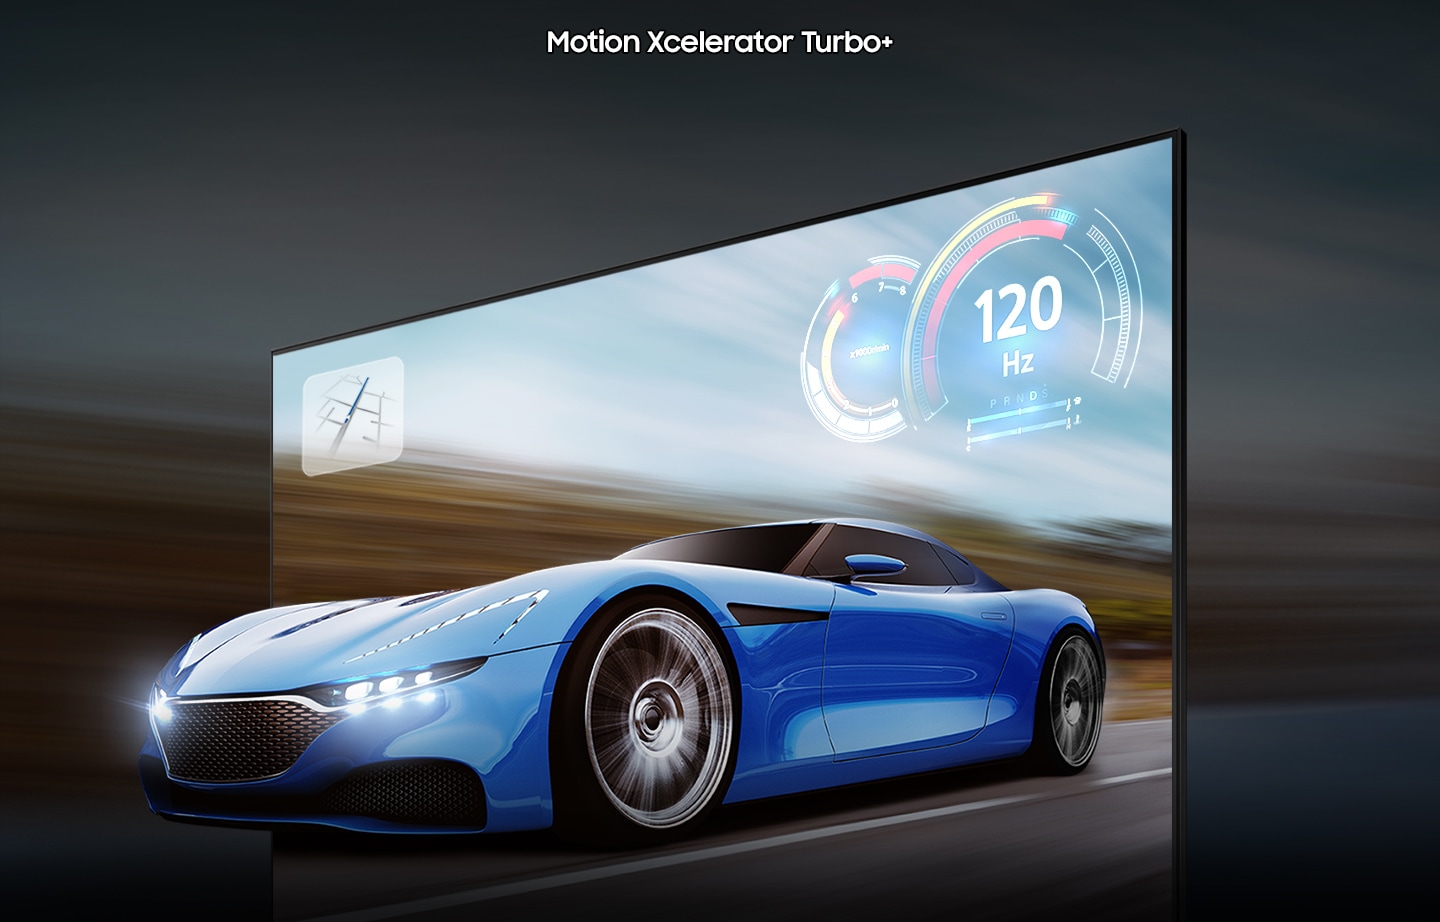 Một chiếc xe đua trên màn hình TV trông rõ ràng hơn và hiển thị nhiều hơn trên TV QLED so với TV thông thường do công nghệ motion xcelerator turbo+.